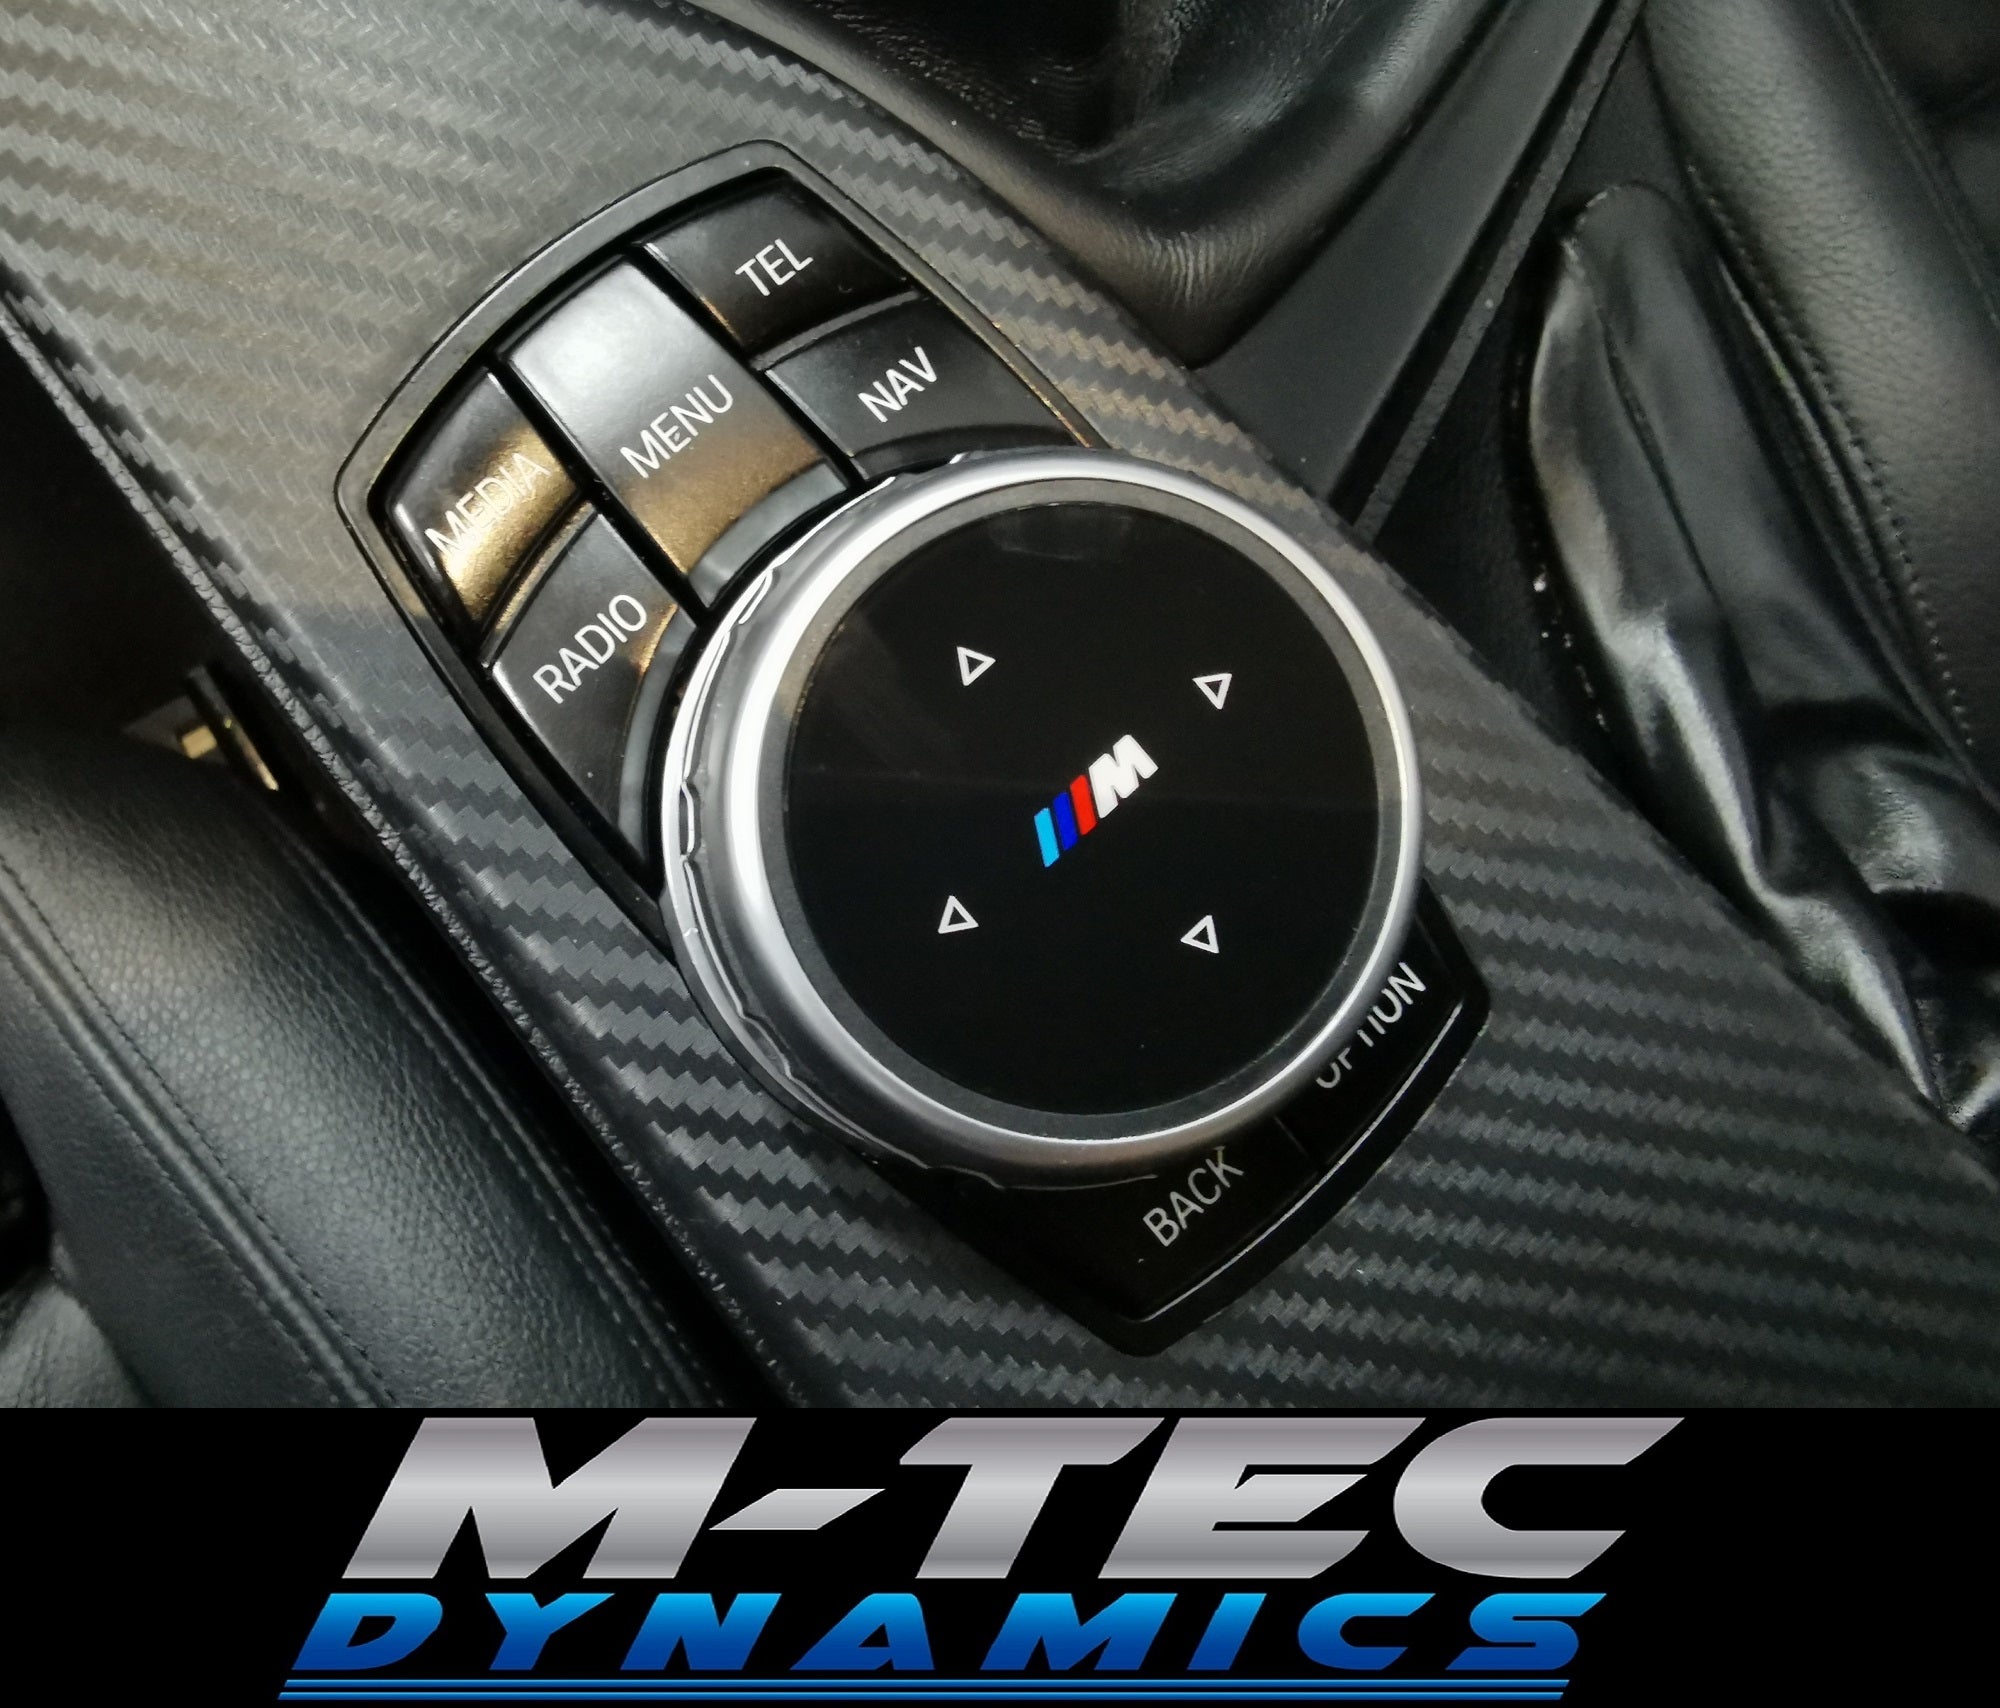 BMW E9X E6X F2X F3X CIC LCI I-DRIVE CONTROLLER COVER M LOGO